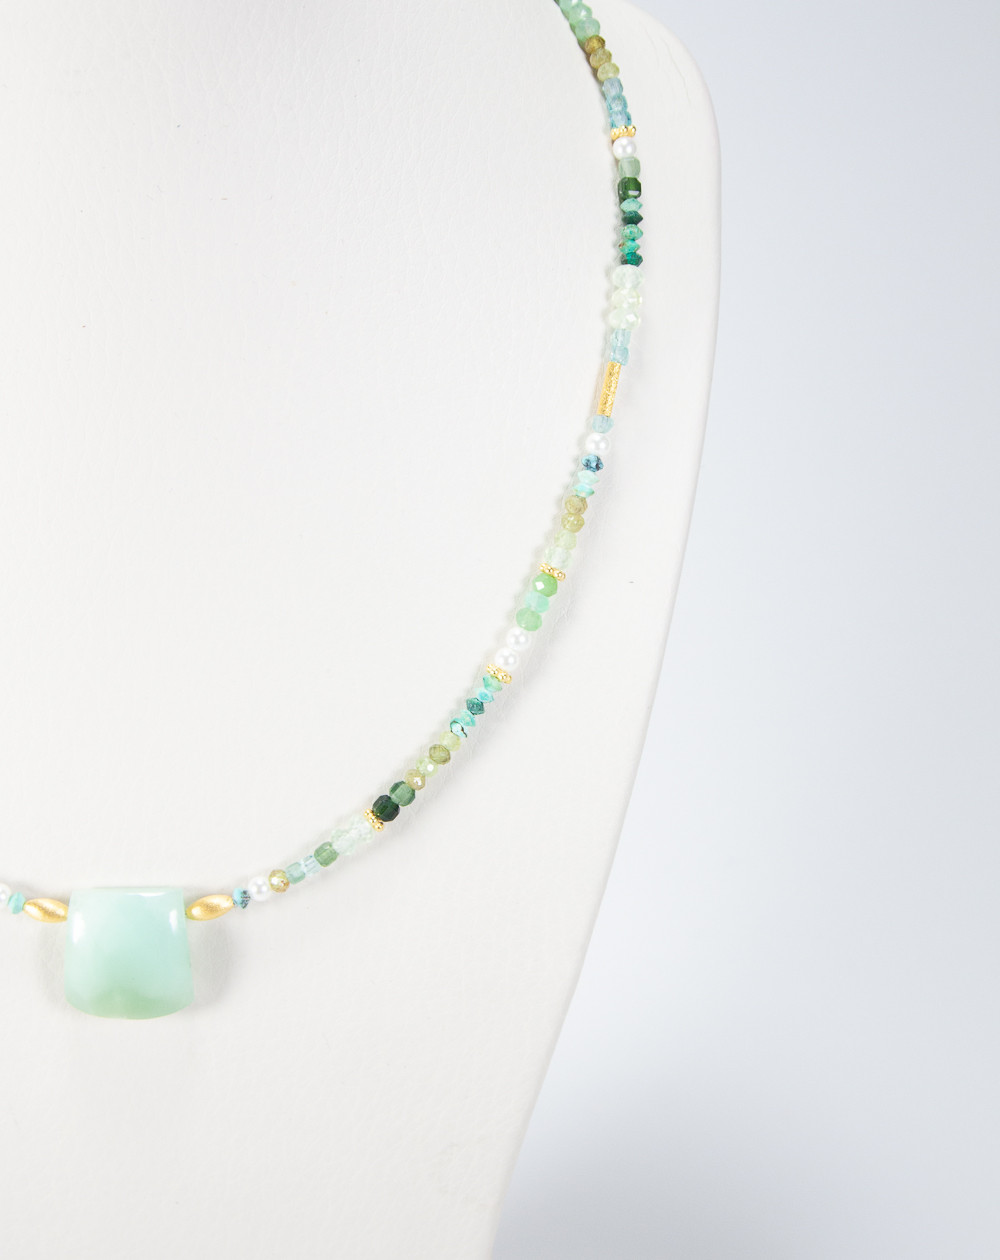 Collier Jade, Turquoise, Perle d'eau douce, Préhnite, Grenat grossulaire, pendentif en Chrysoprase. Sanuk Création, Bayonne